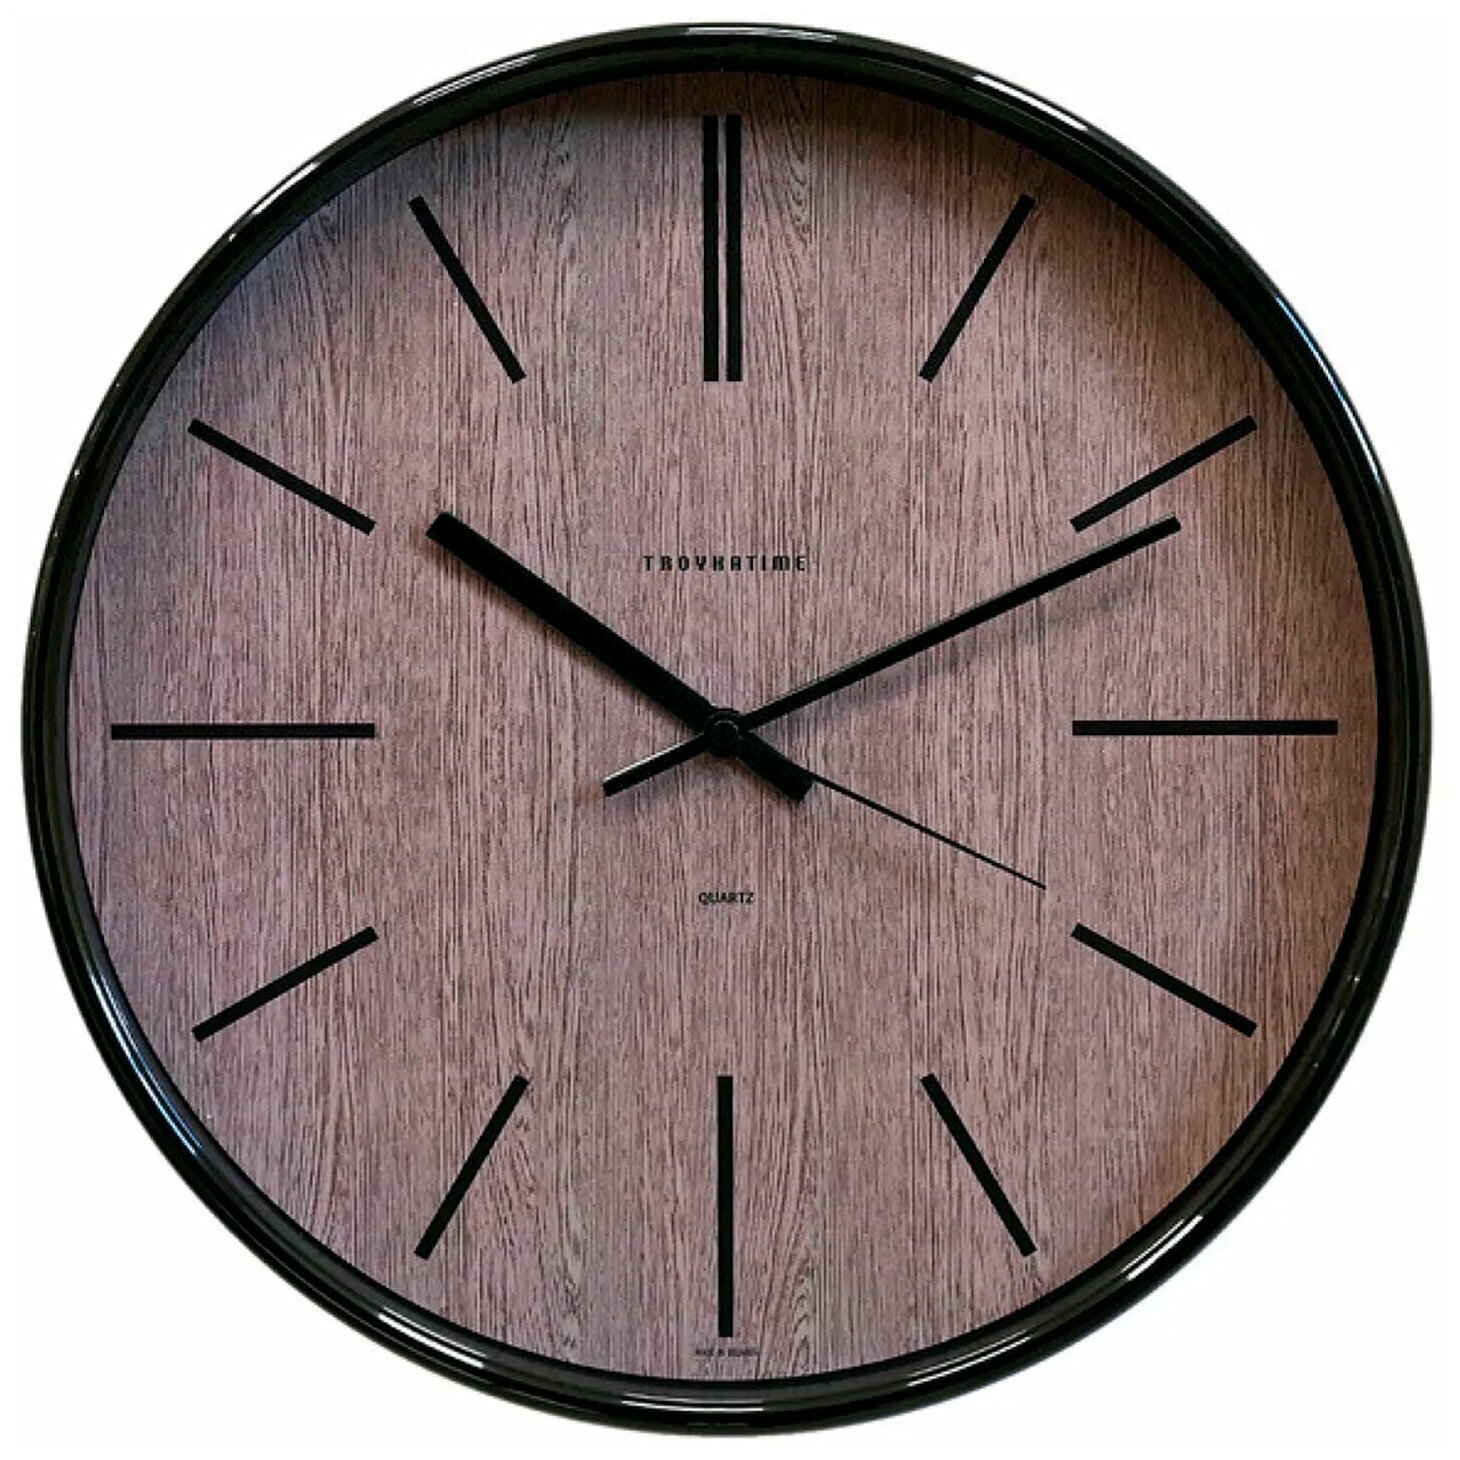 Часы настенные TROYKA 77770743, круг, коричневые, черная рамка, 30,5х30,5х5 см — купить в интернет-магазине по низкой цене на Яндекс Маркете